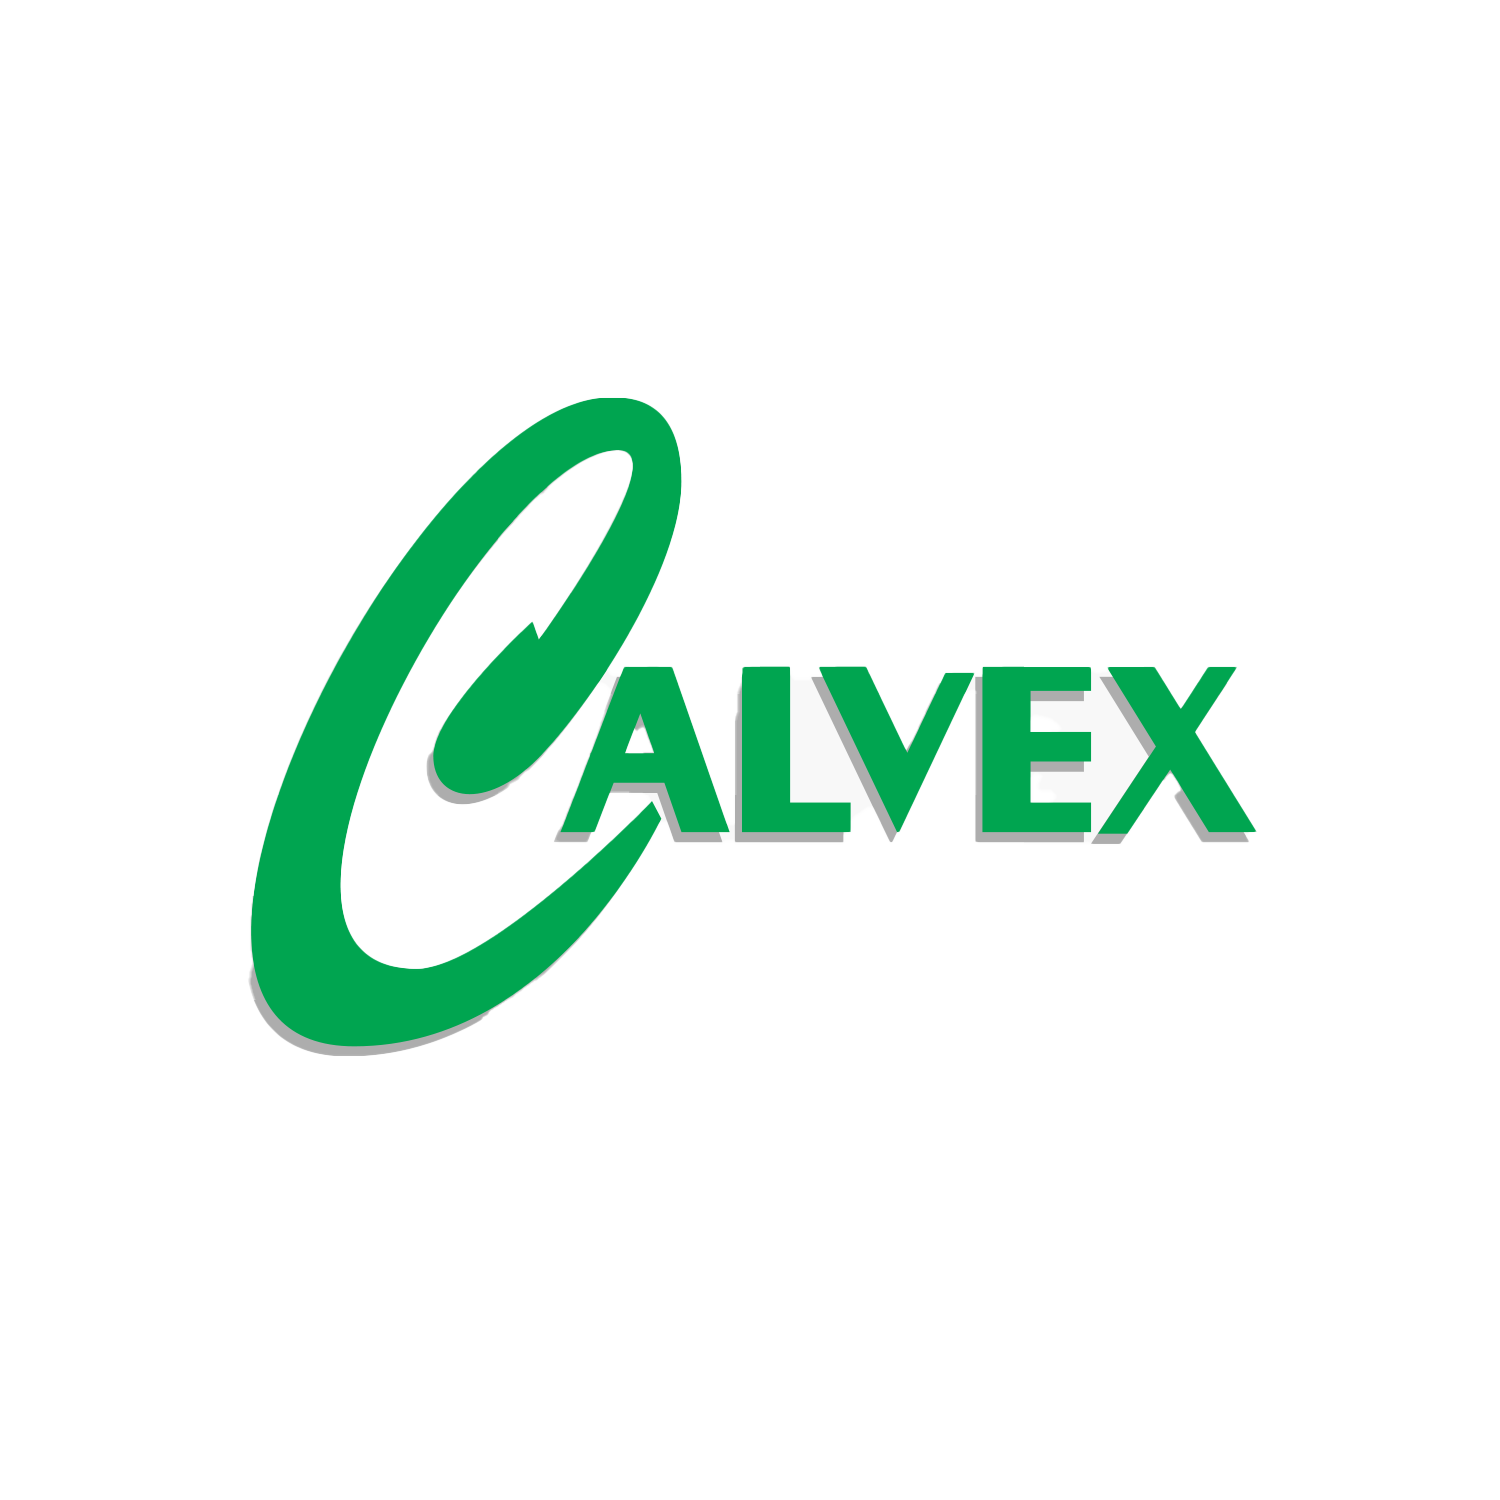 Calvex-News-Logo-Image